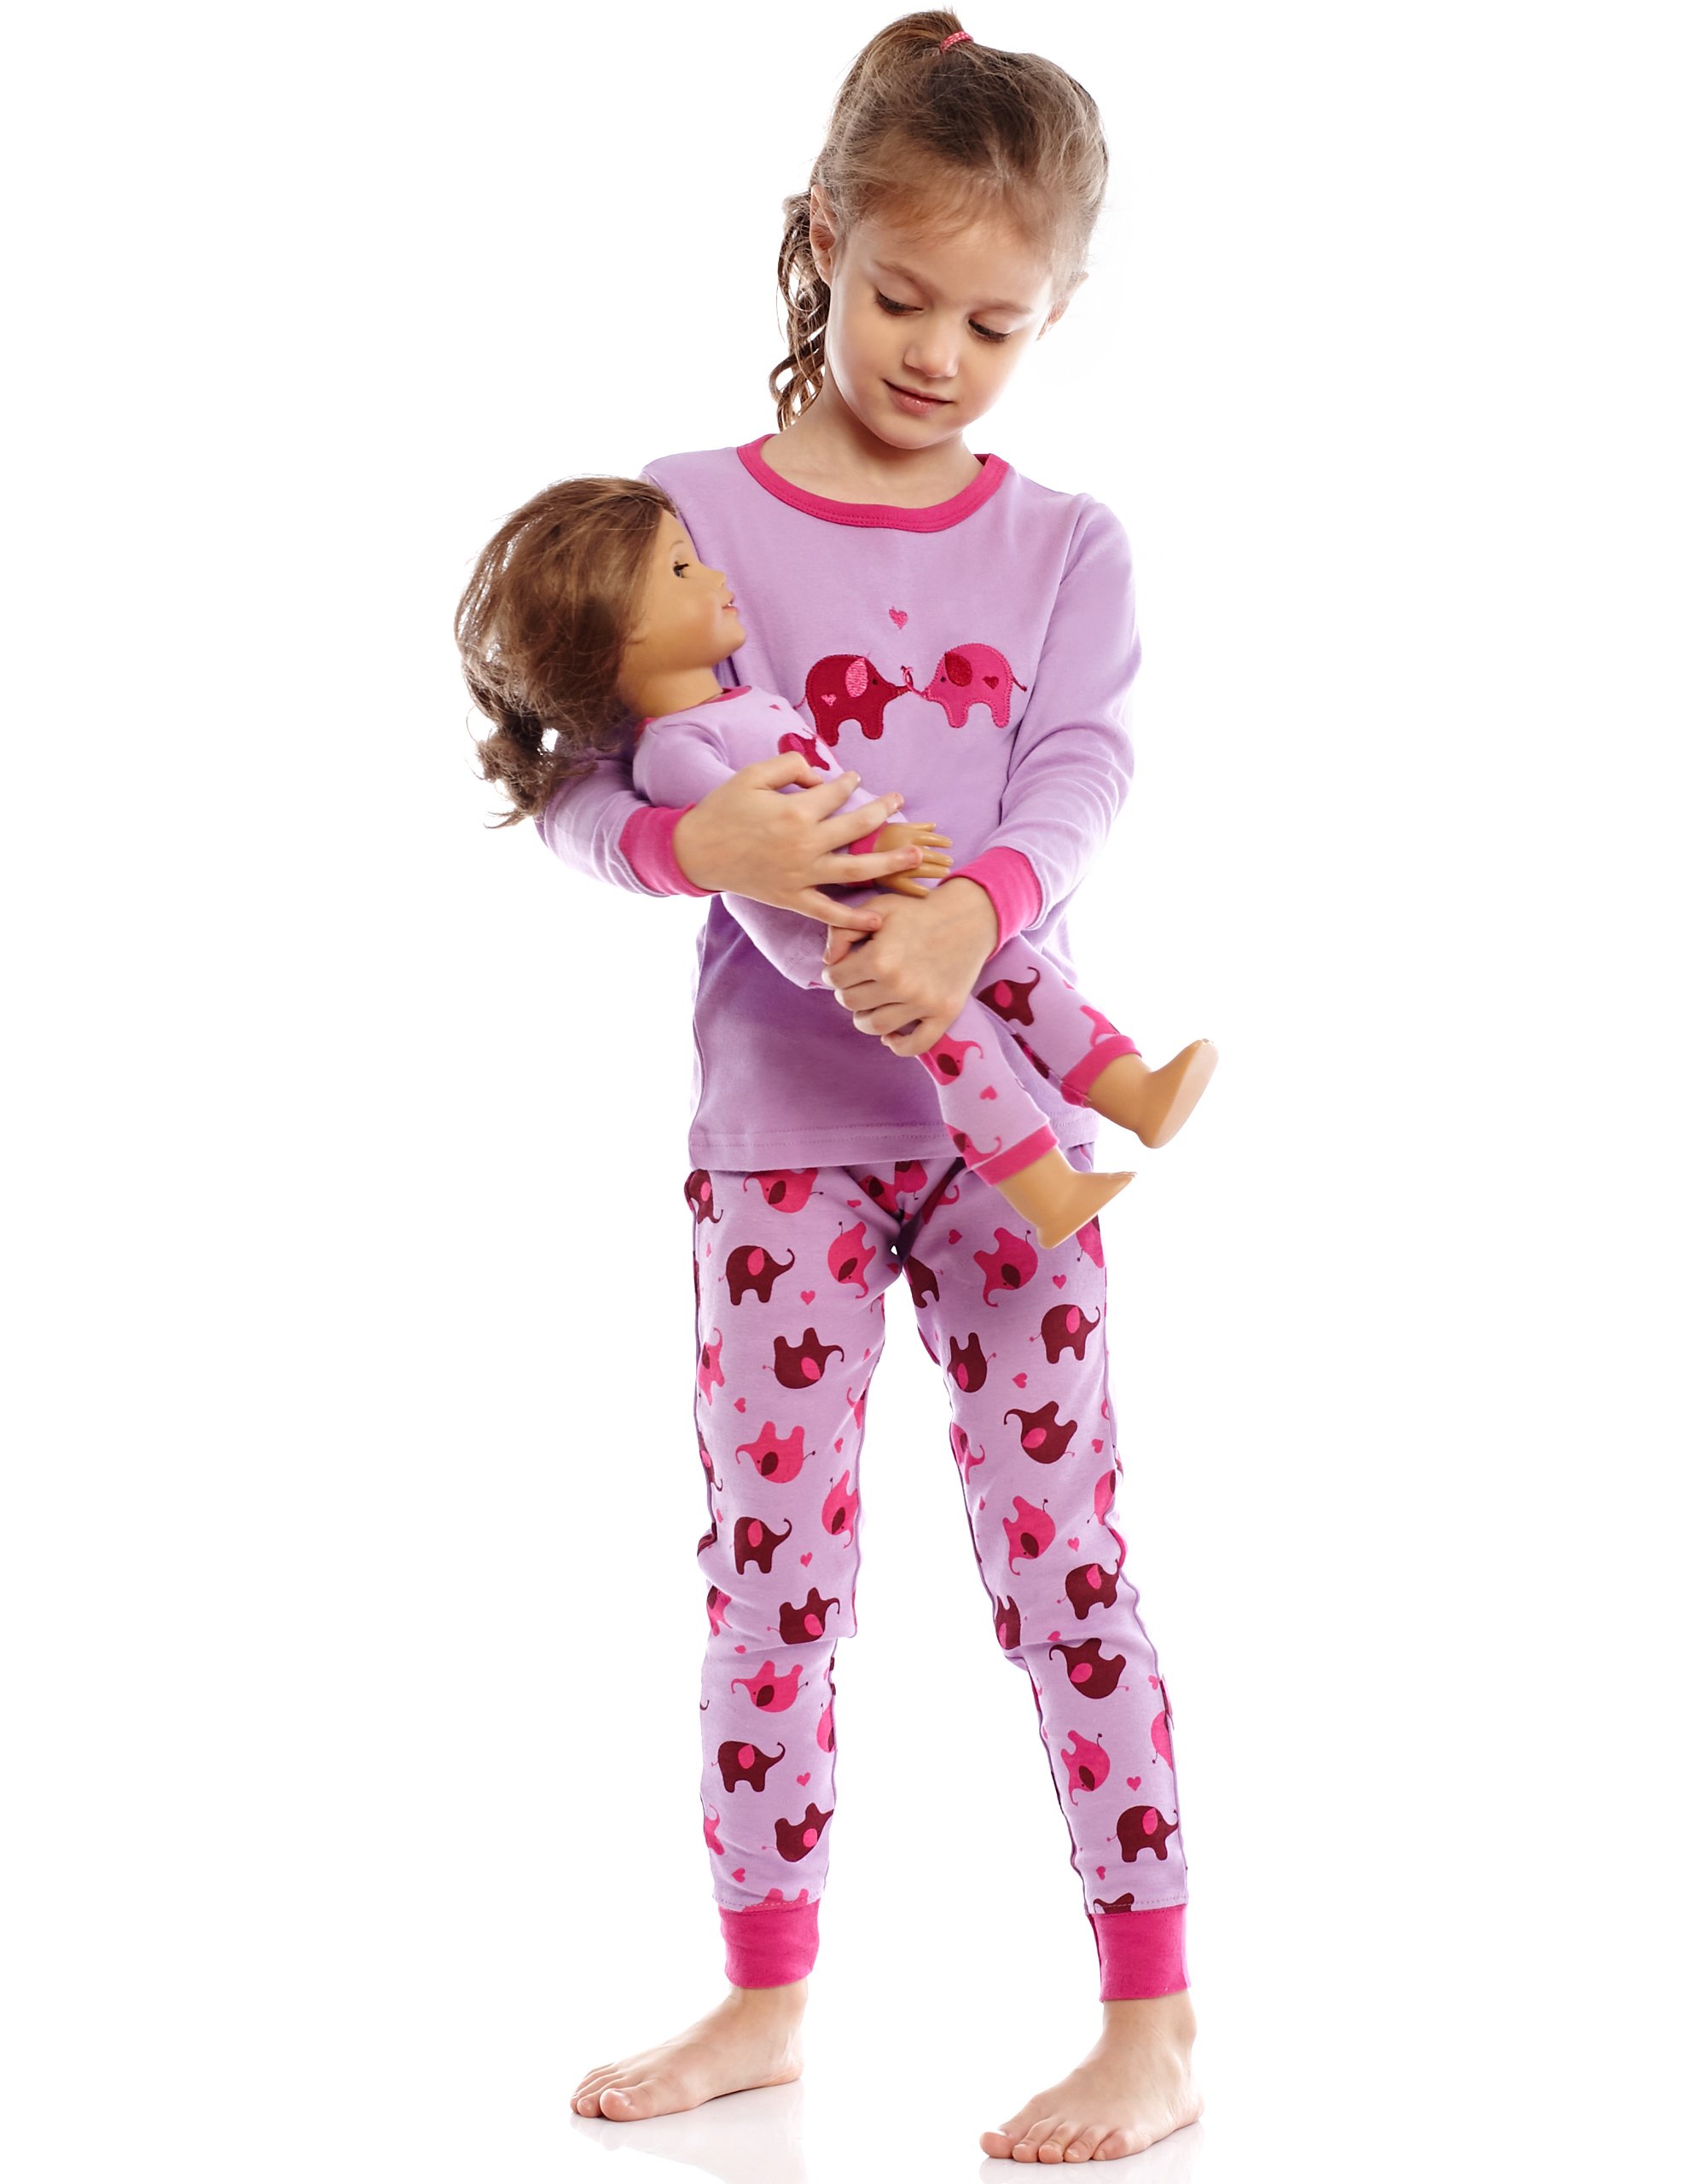 Leveret Kids & Toddler Pajamas Matching Doll & Girls Pajamas 100% Cotton Set (Toddler-14 Years) Fits American Girl